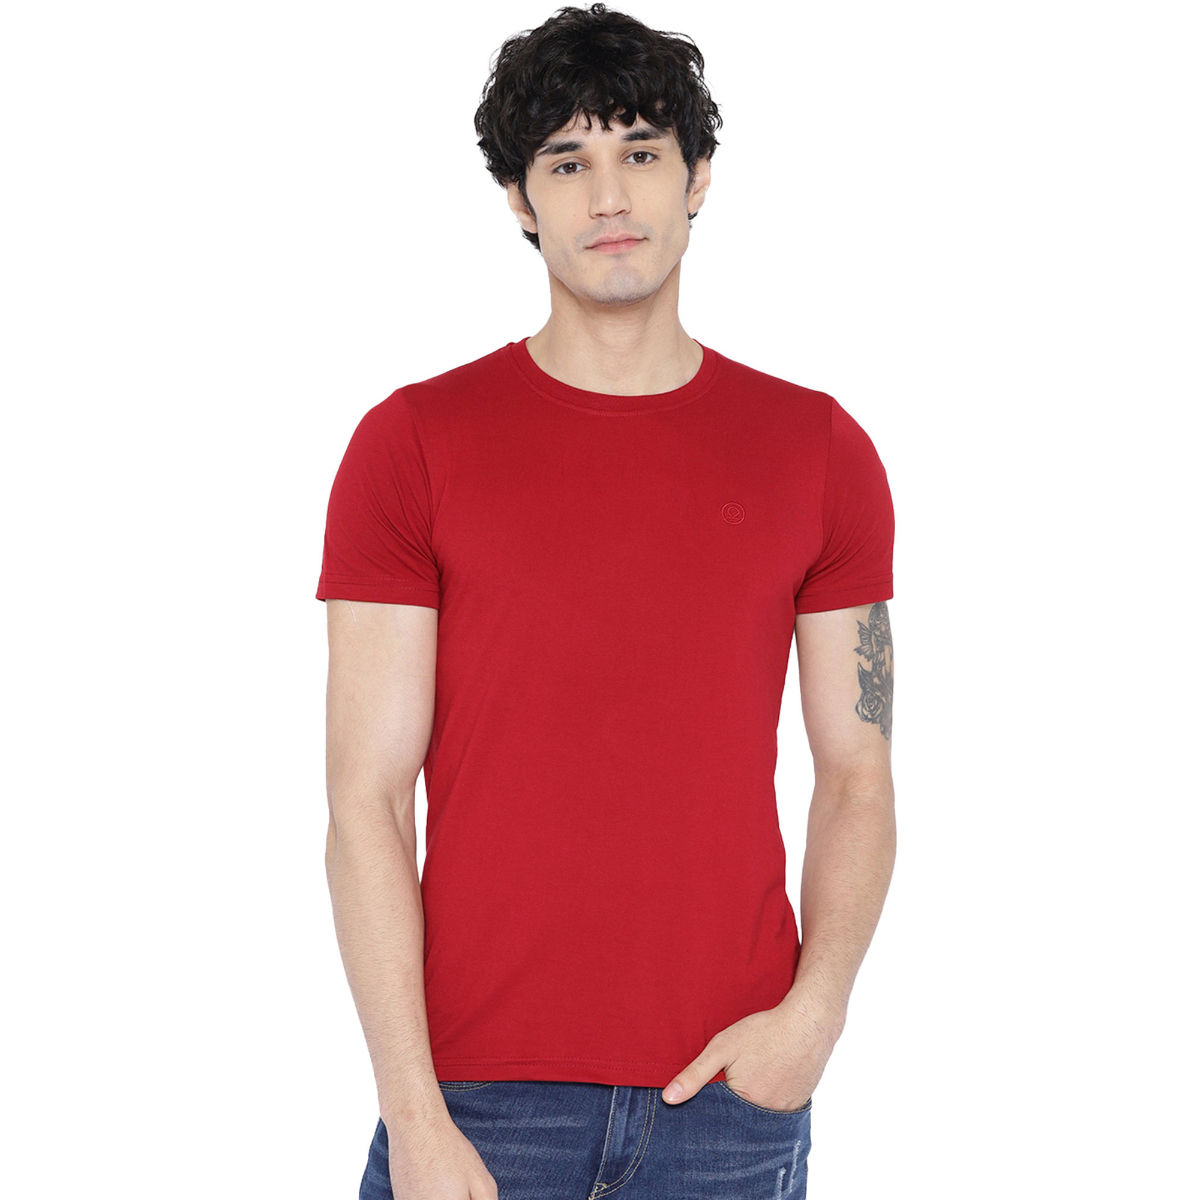 CHKOKKO Red Round Neck T-Shirt (M)